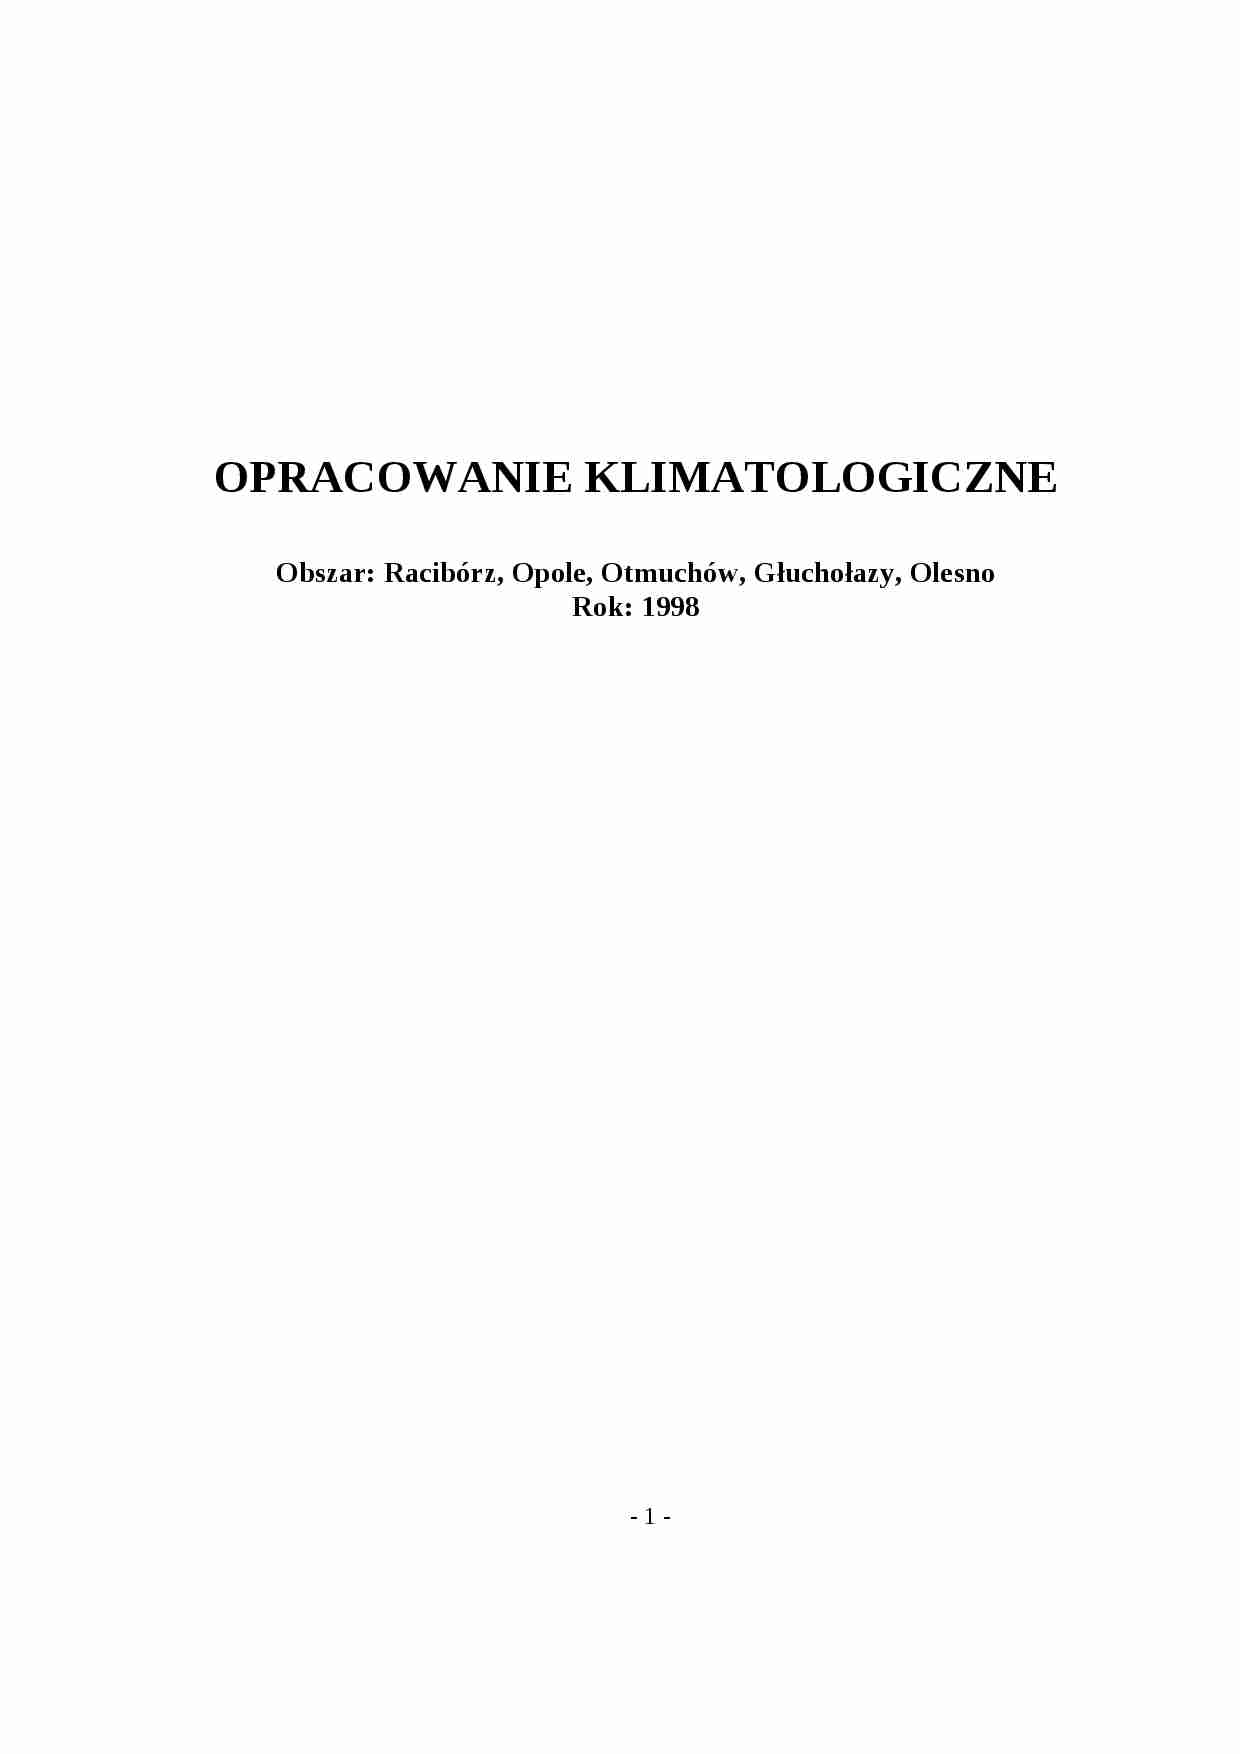 Opracowanie meteorologiczne - Obszar Racibórz Opole Otmuchów G_ucho_azy Olesno - strona 1